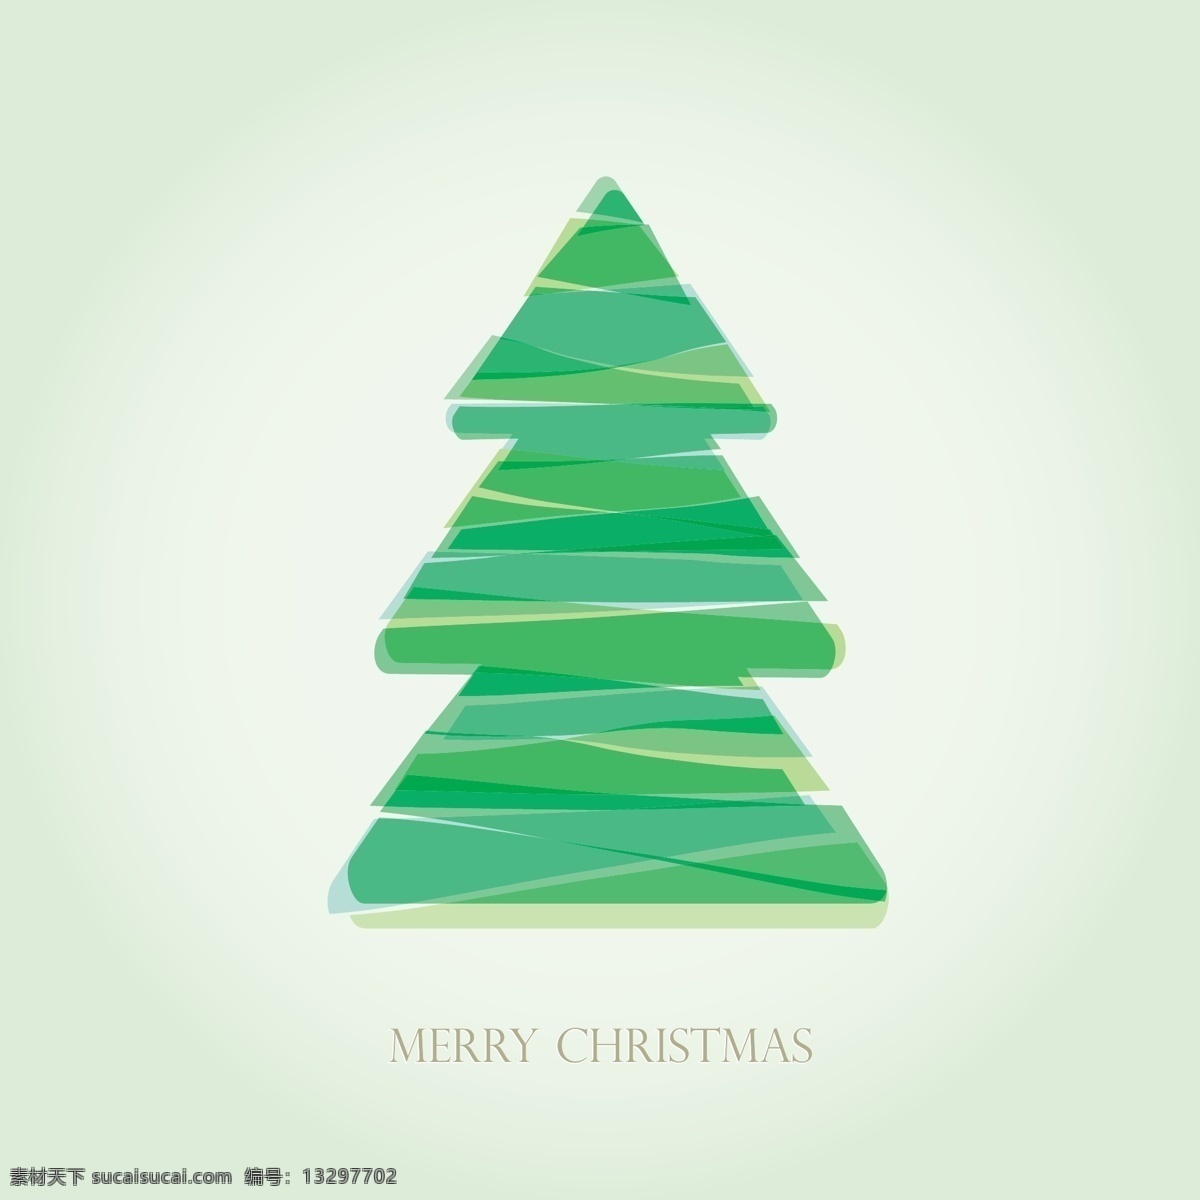 圣诞树背景 背景 圣诞节 绿色 快乐 圣诞 庆祝活动 条纹 庆祝 节假日 风流发 圣诞快乐 隔离 制成